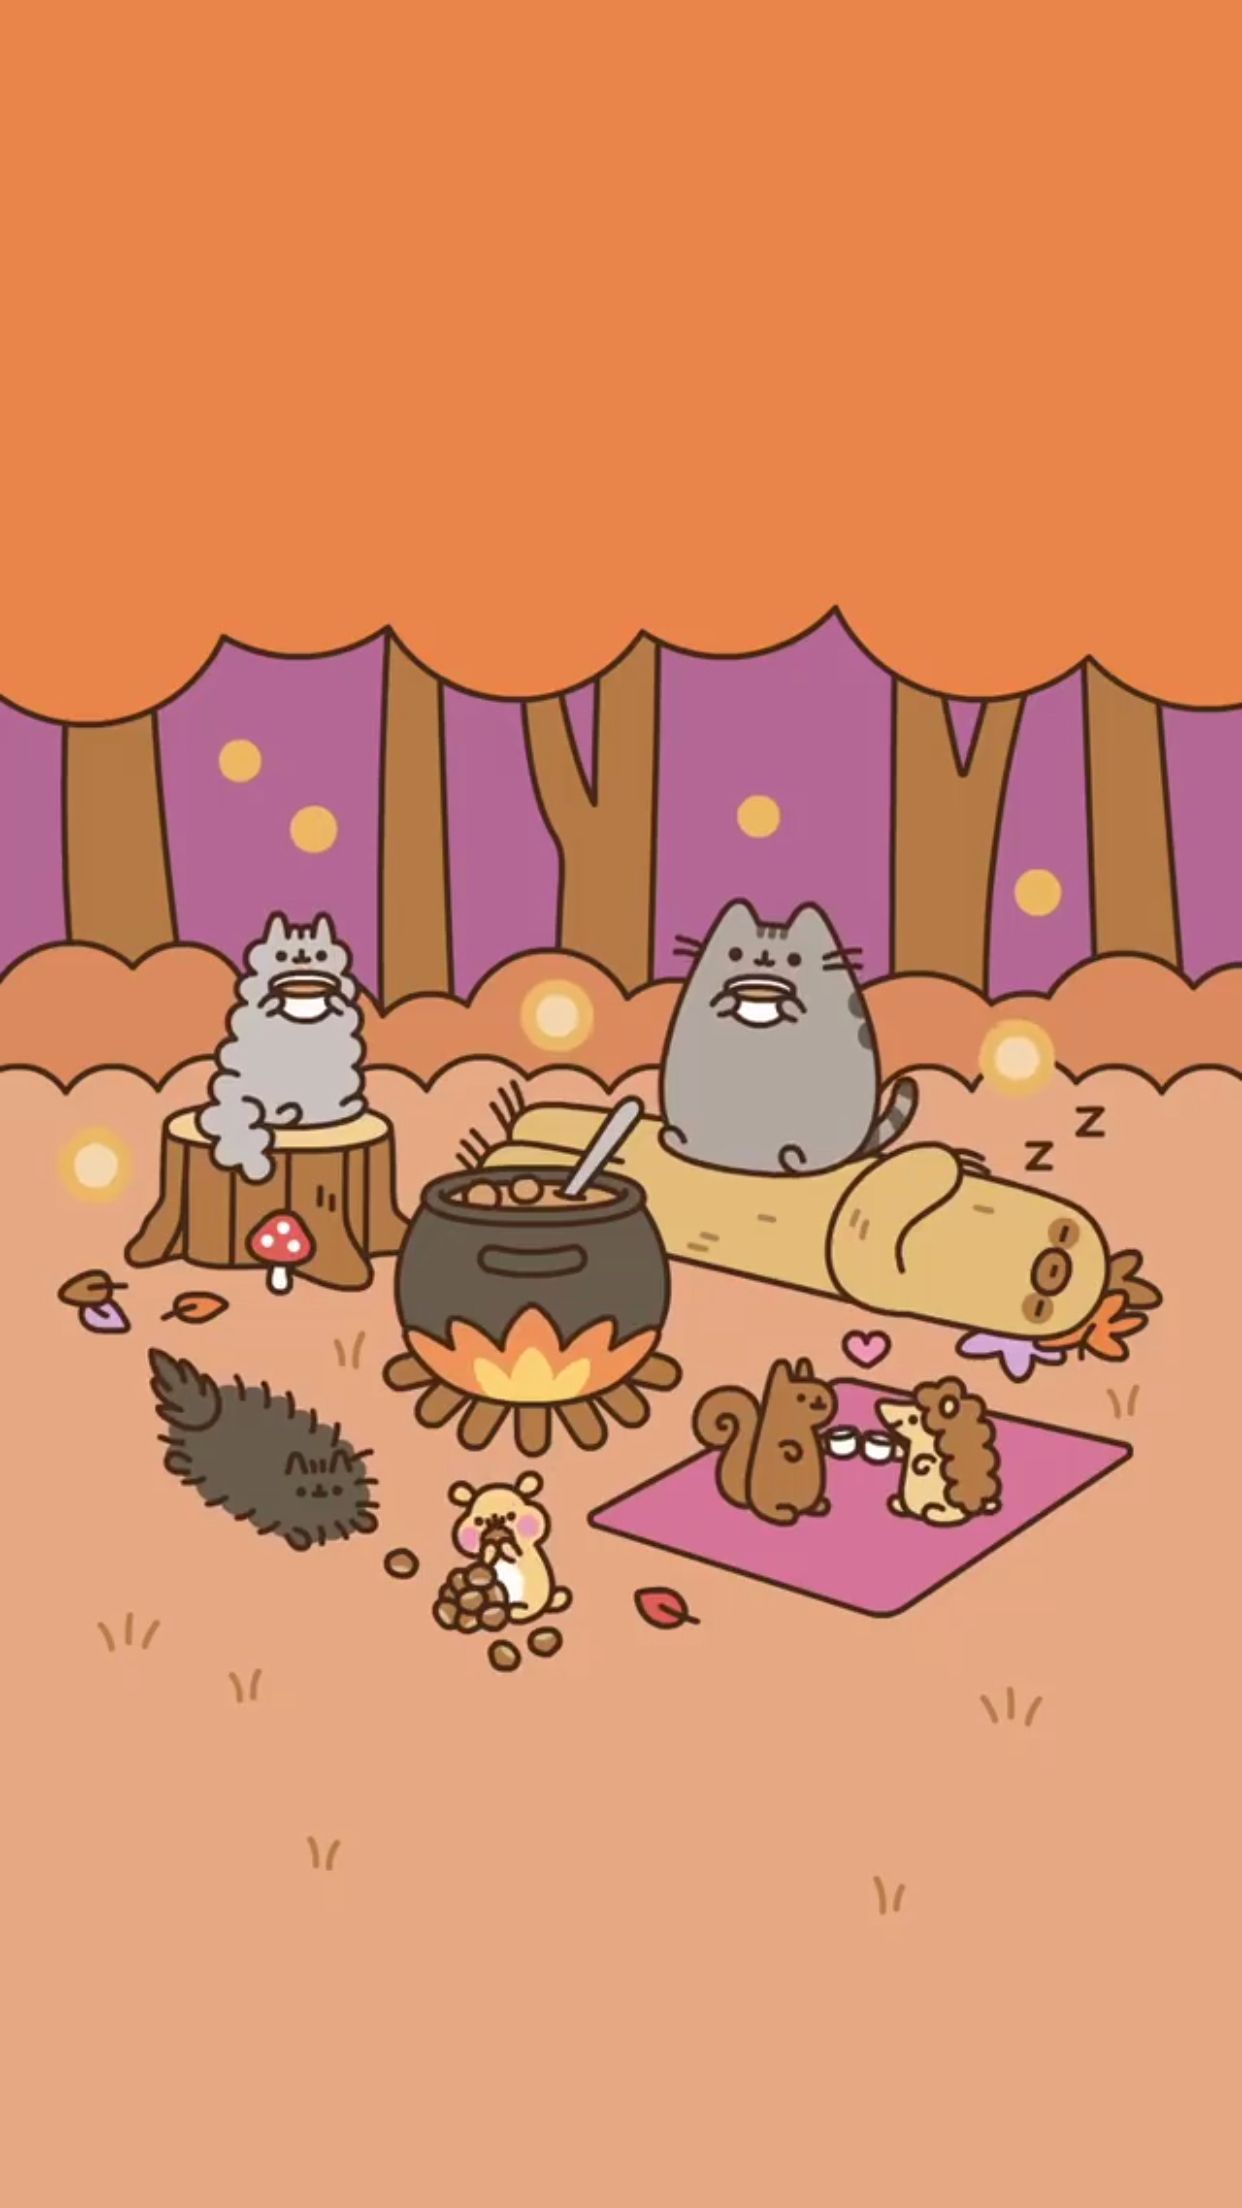 pusheen camping wallpaper ♡. Pusheen cute, Pusheen cat, Pusheen